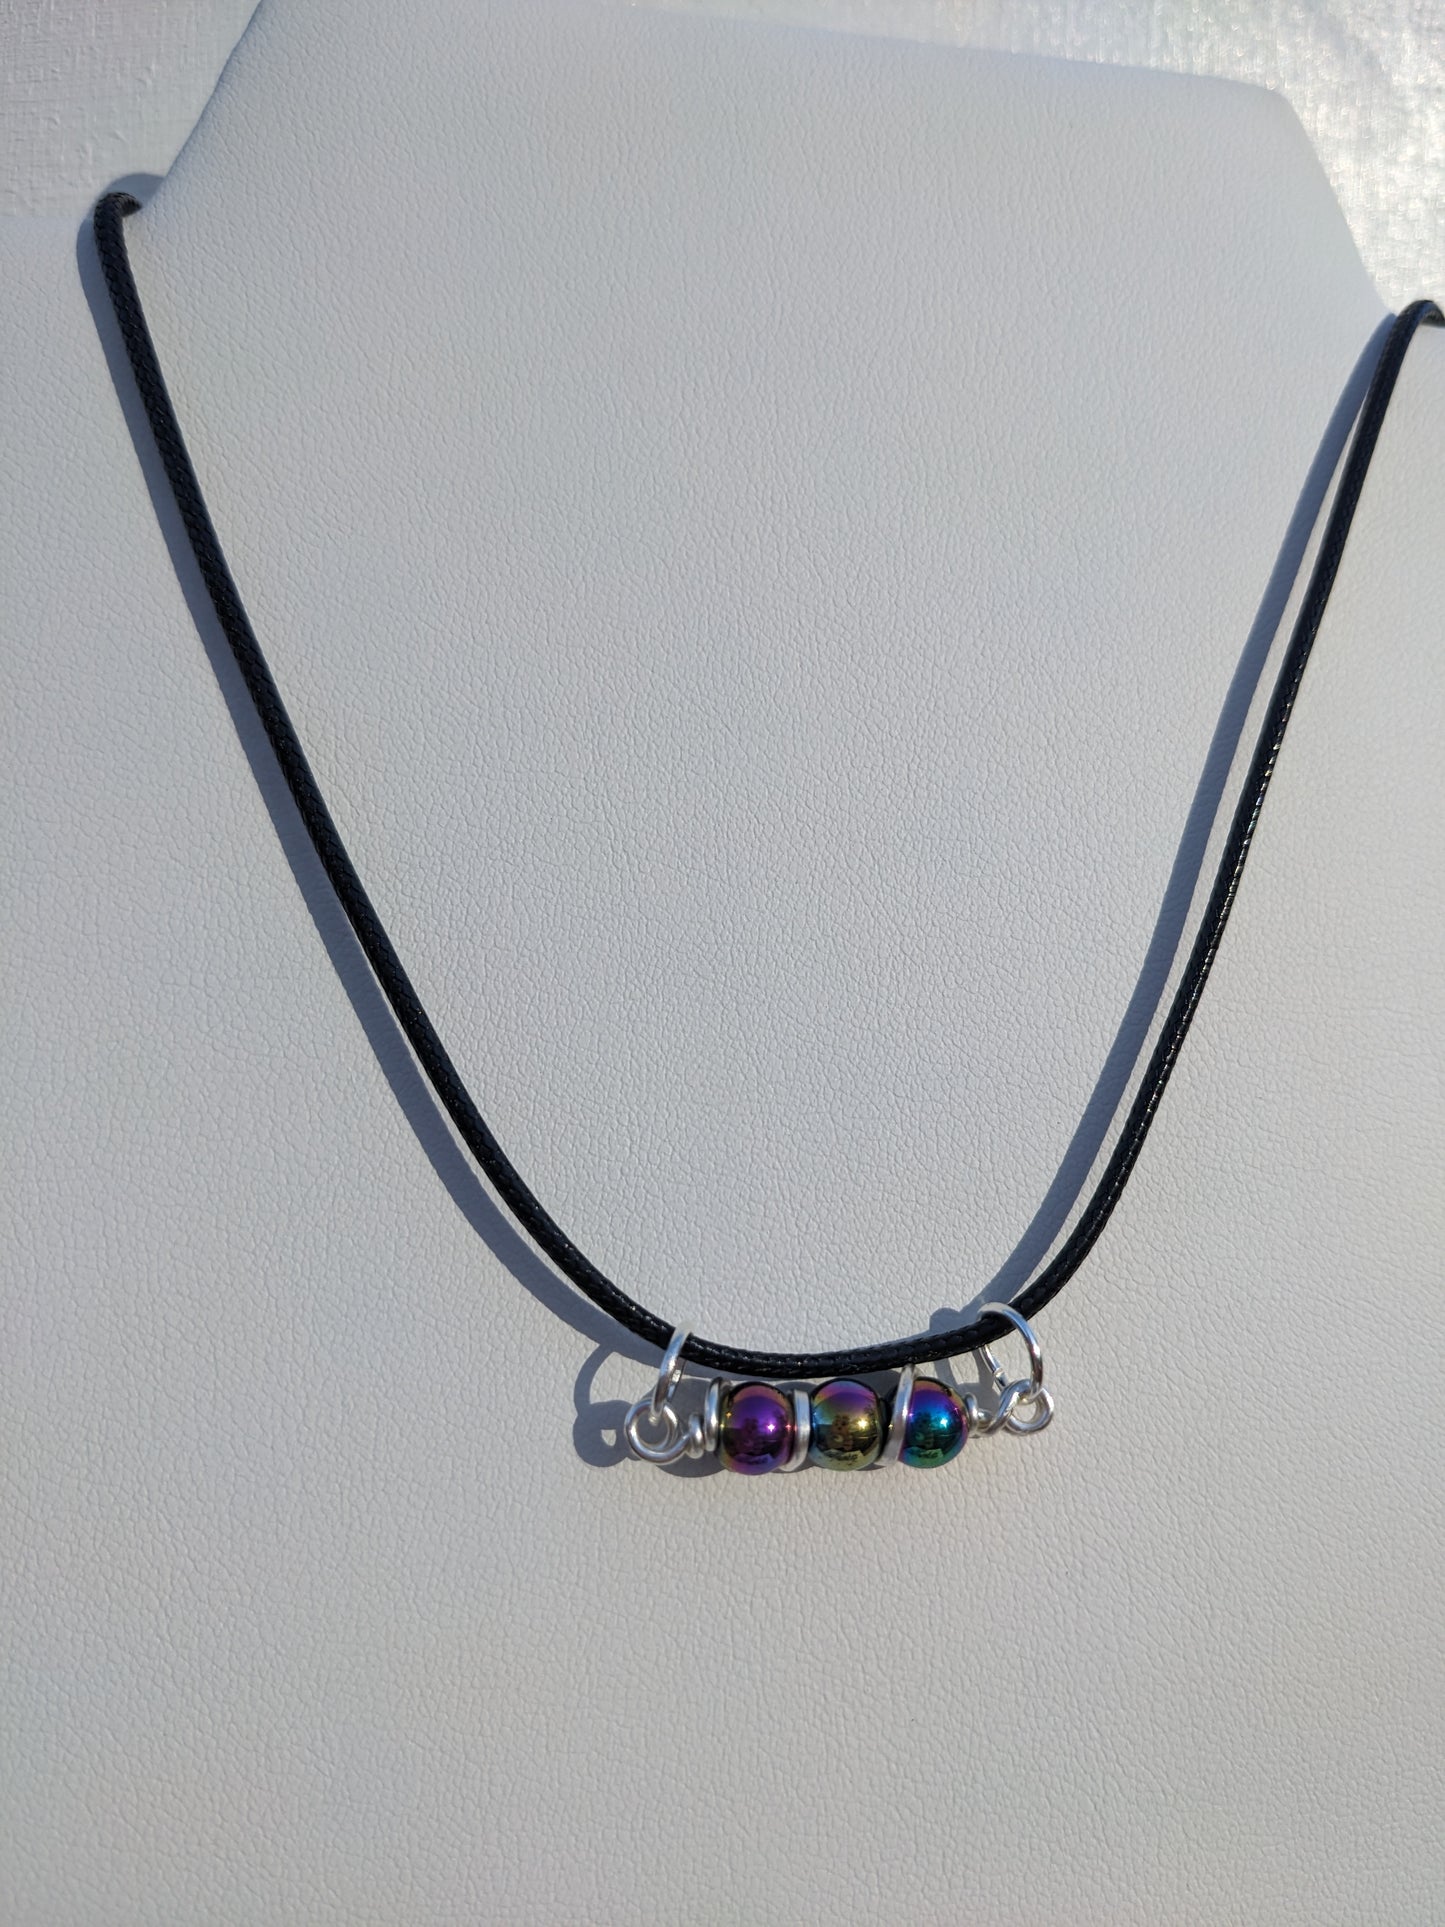 Rainbow hematite necklace